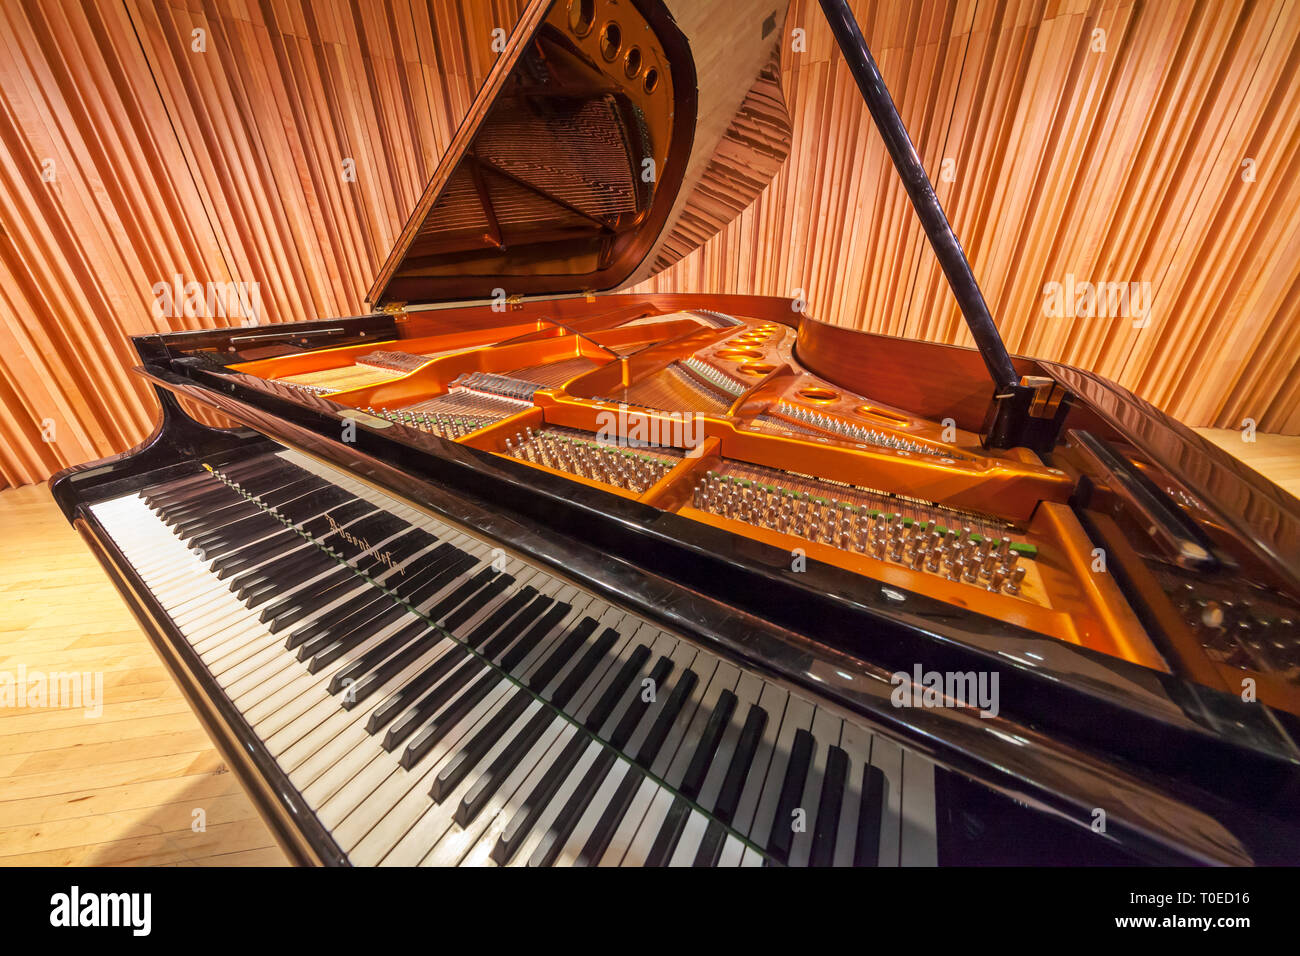 Un pianoforte a coda con il coperchio sollevato rivelando il piano interno. Foto Stock